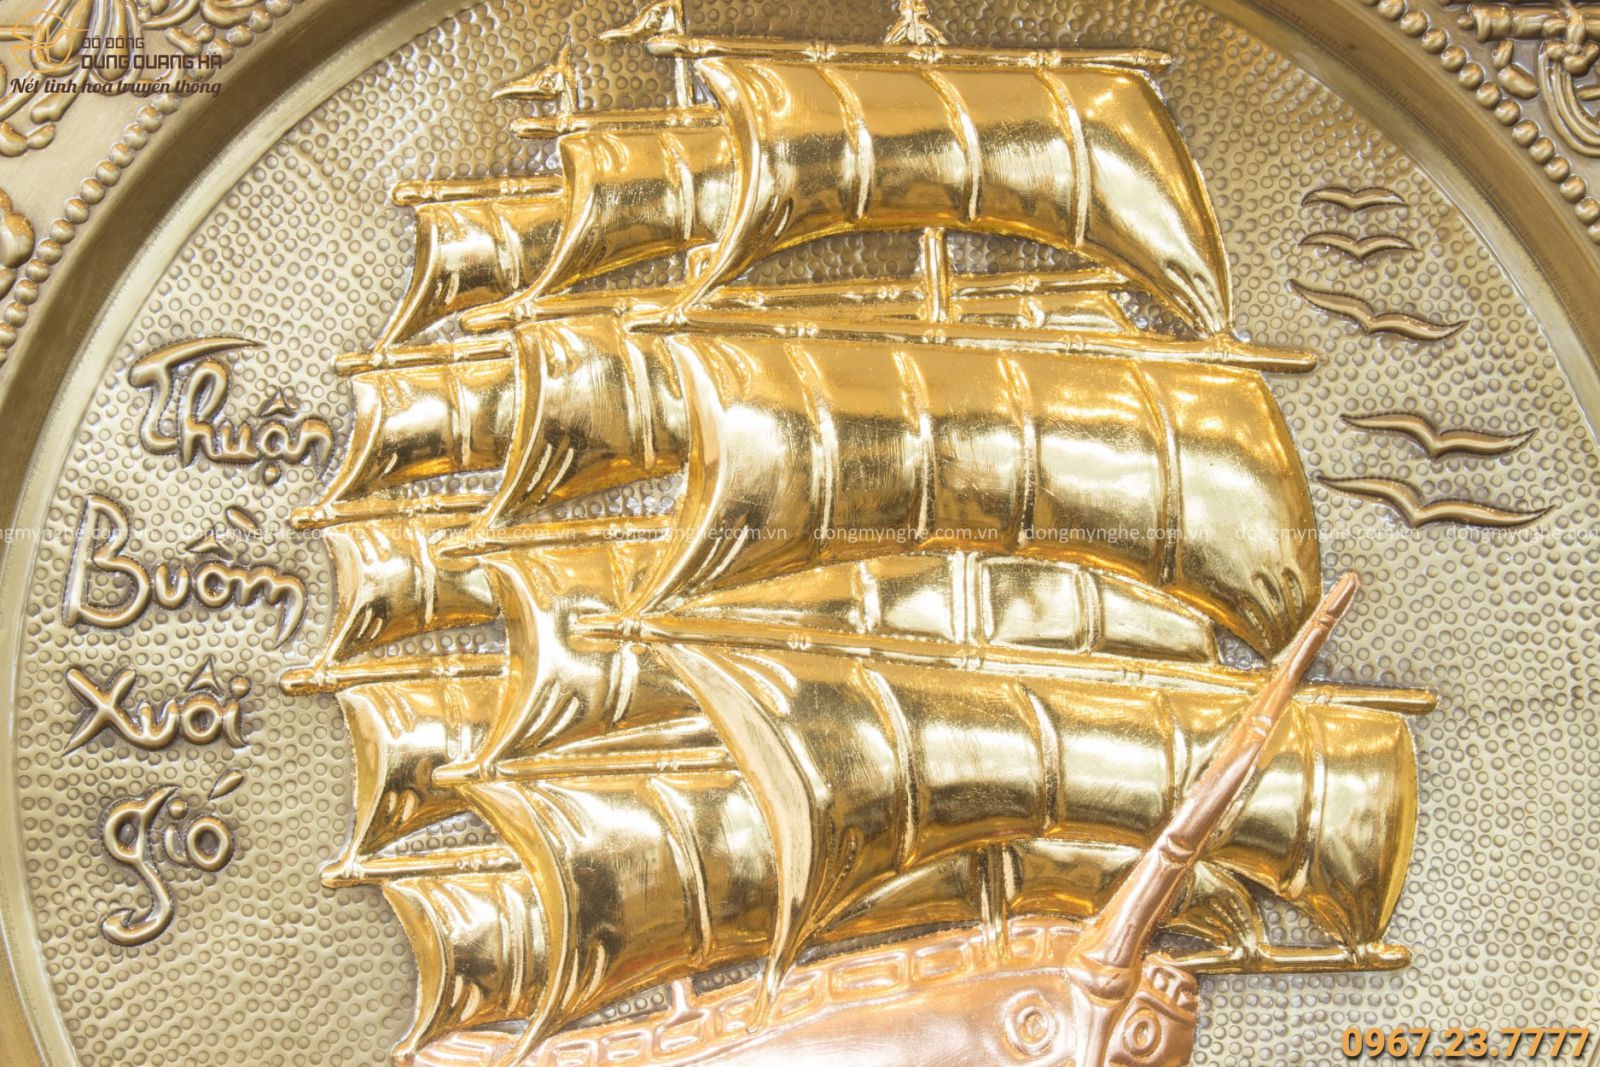 Mâm Thuận Buồm Xuôi Gió bằng đồng giả cổ đường kính 52cm